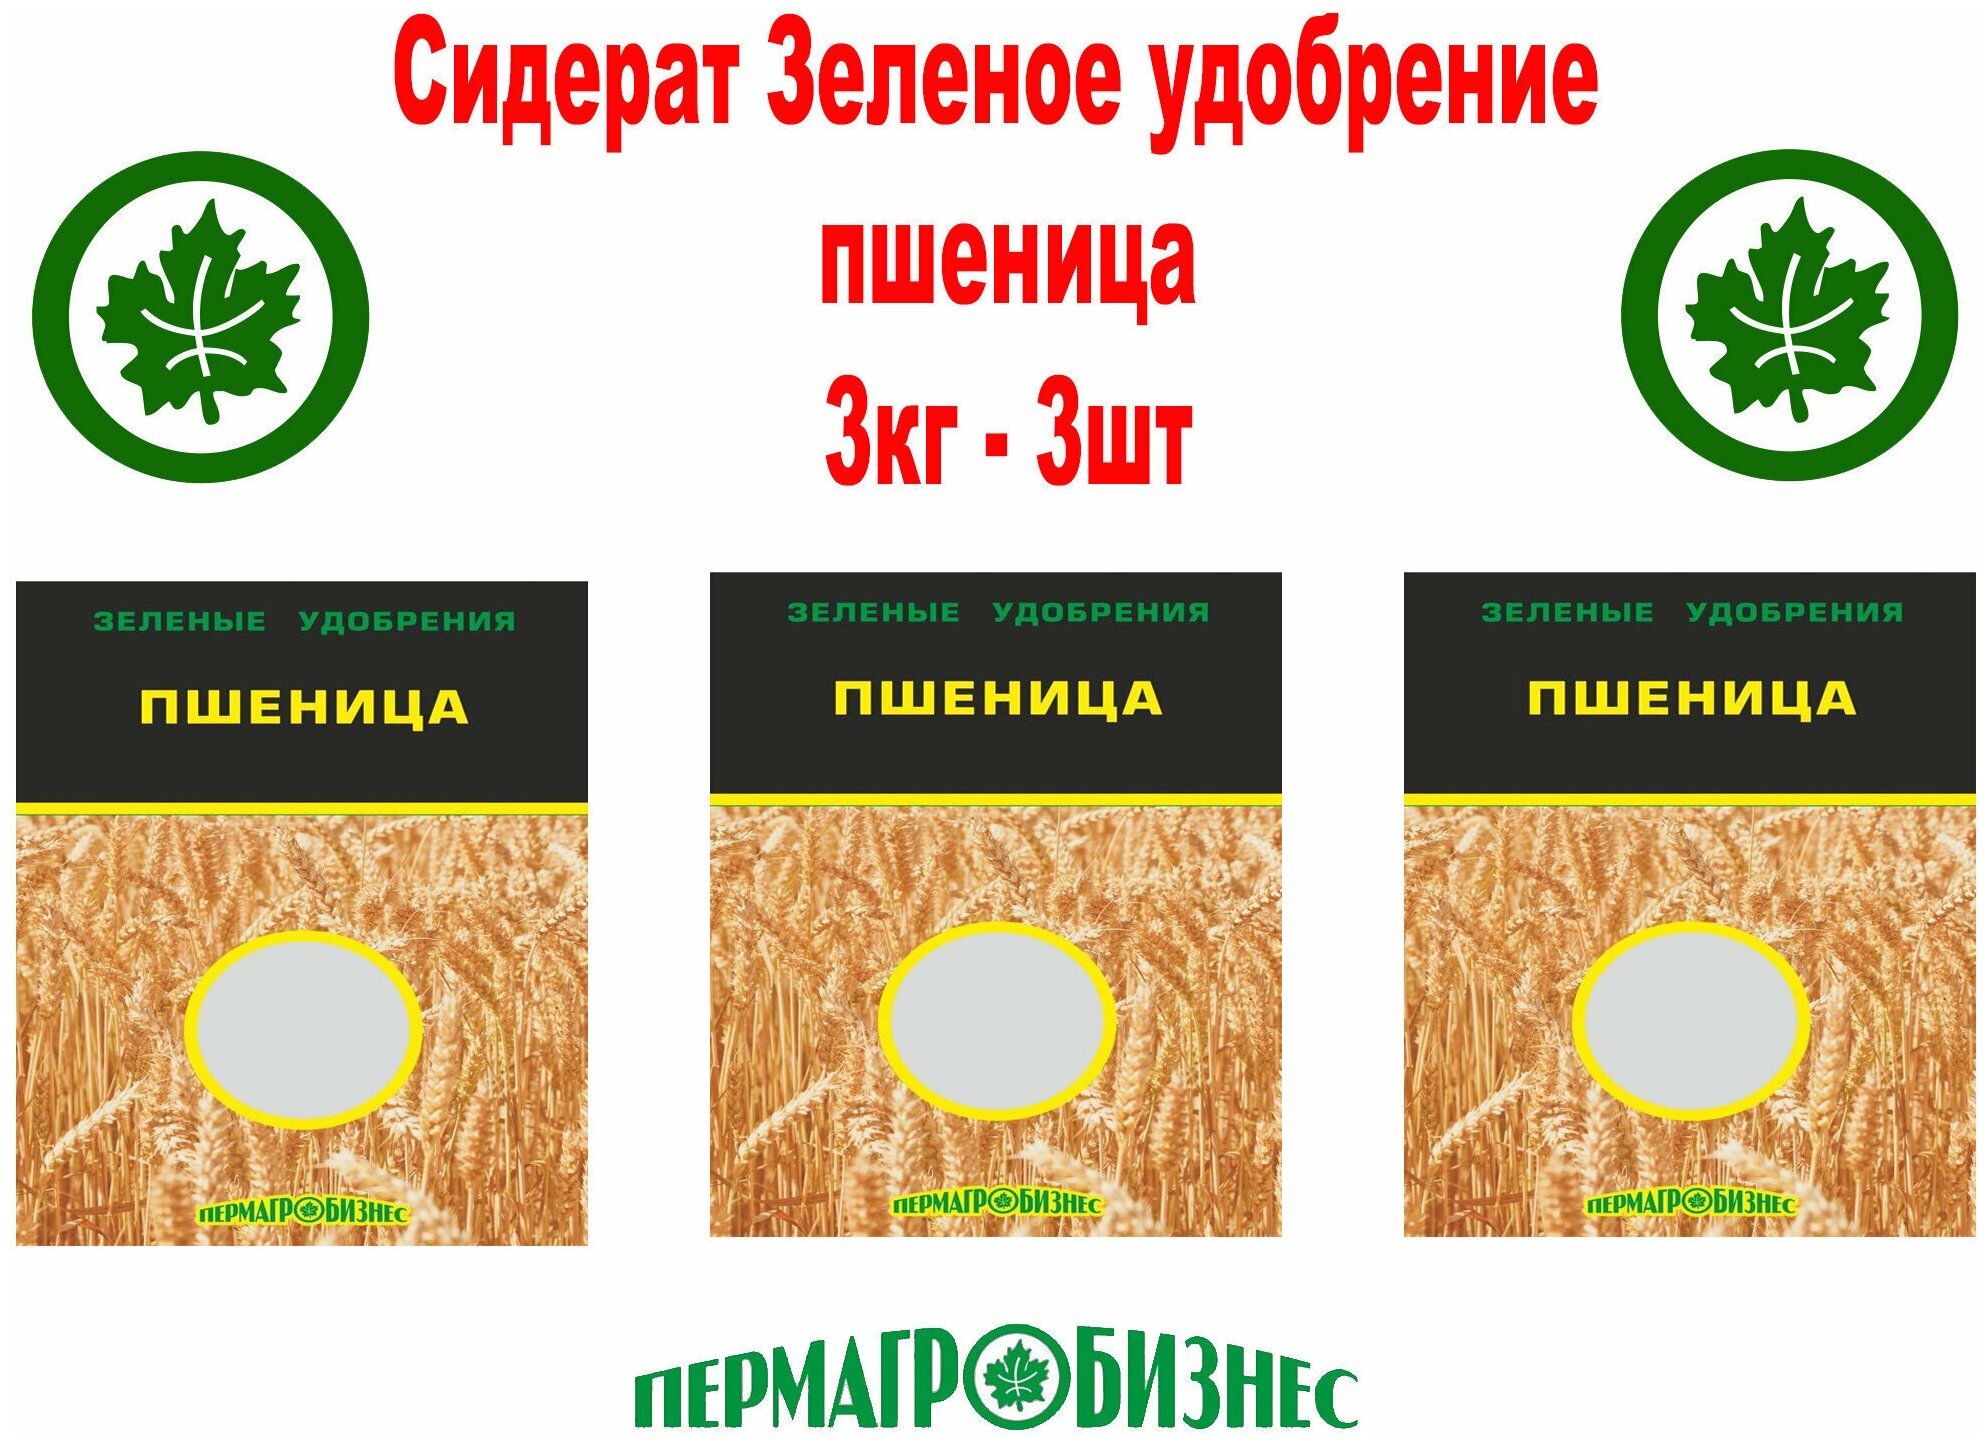 Сидерат Зеленое удобрение Пшеница Пермагробизнес 1кг - 3 пачки - фотография № 1